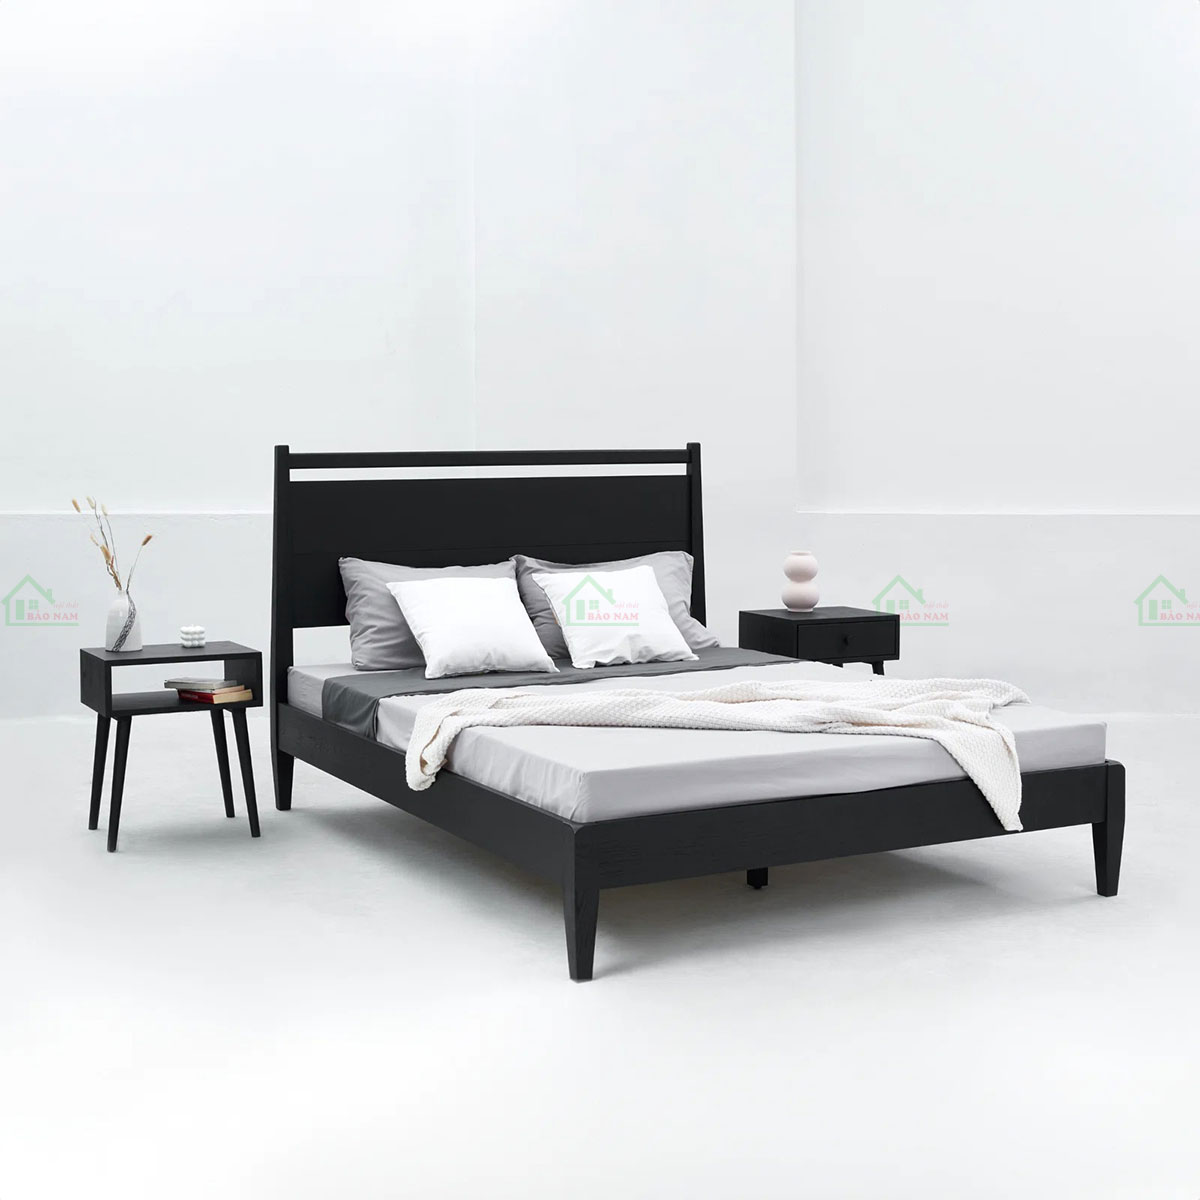 Mẫu giường ngủ gỗ đẹp thiết kế tối giản